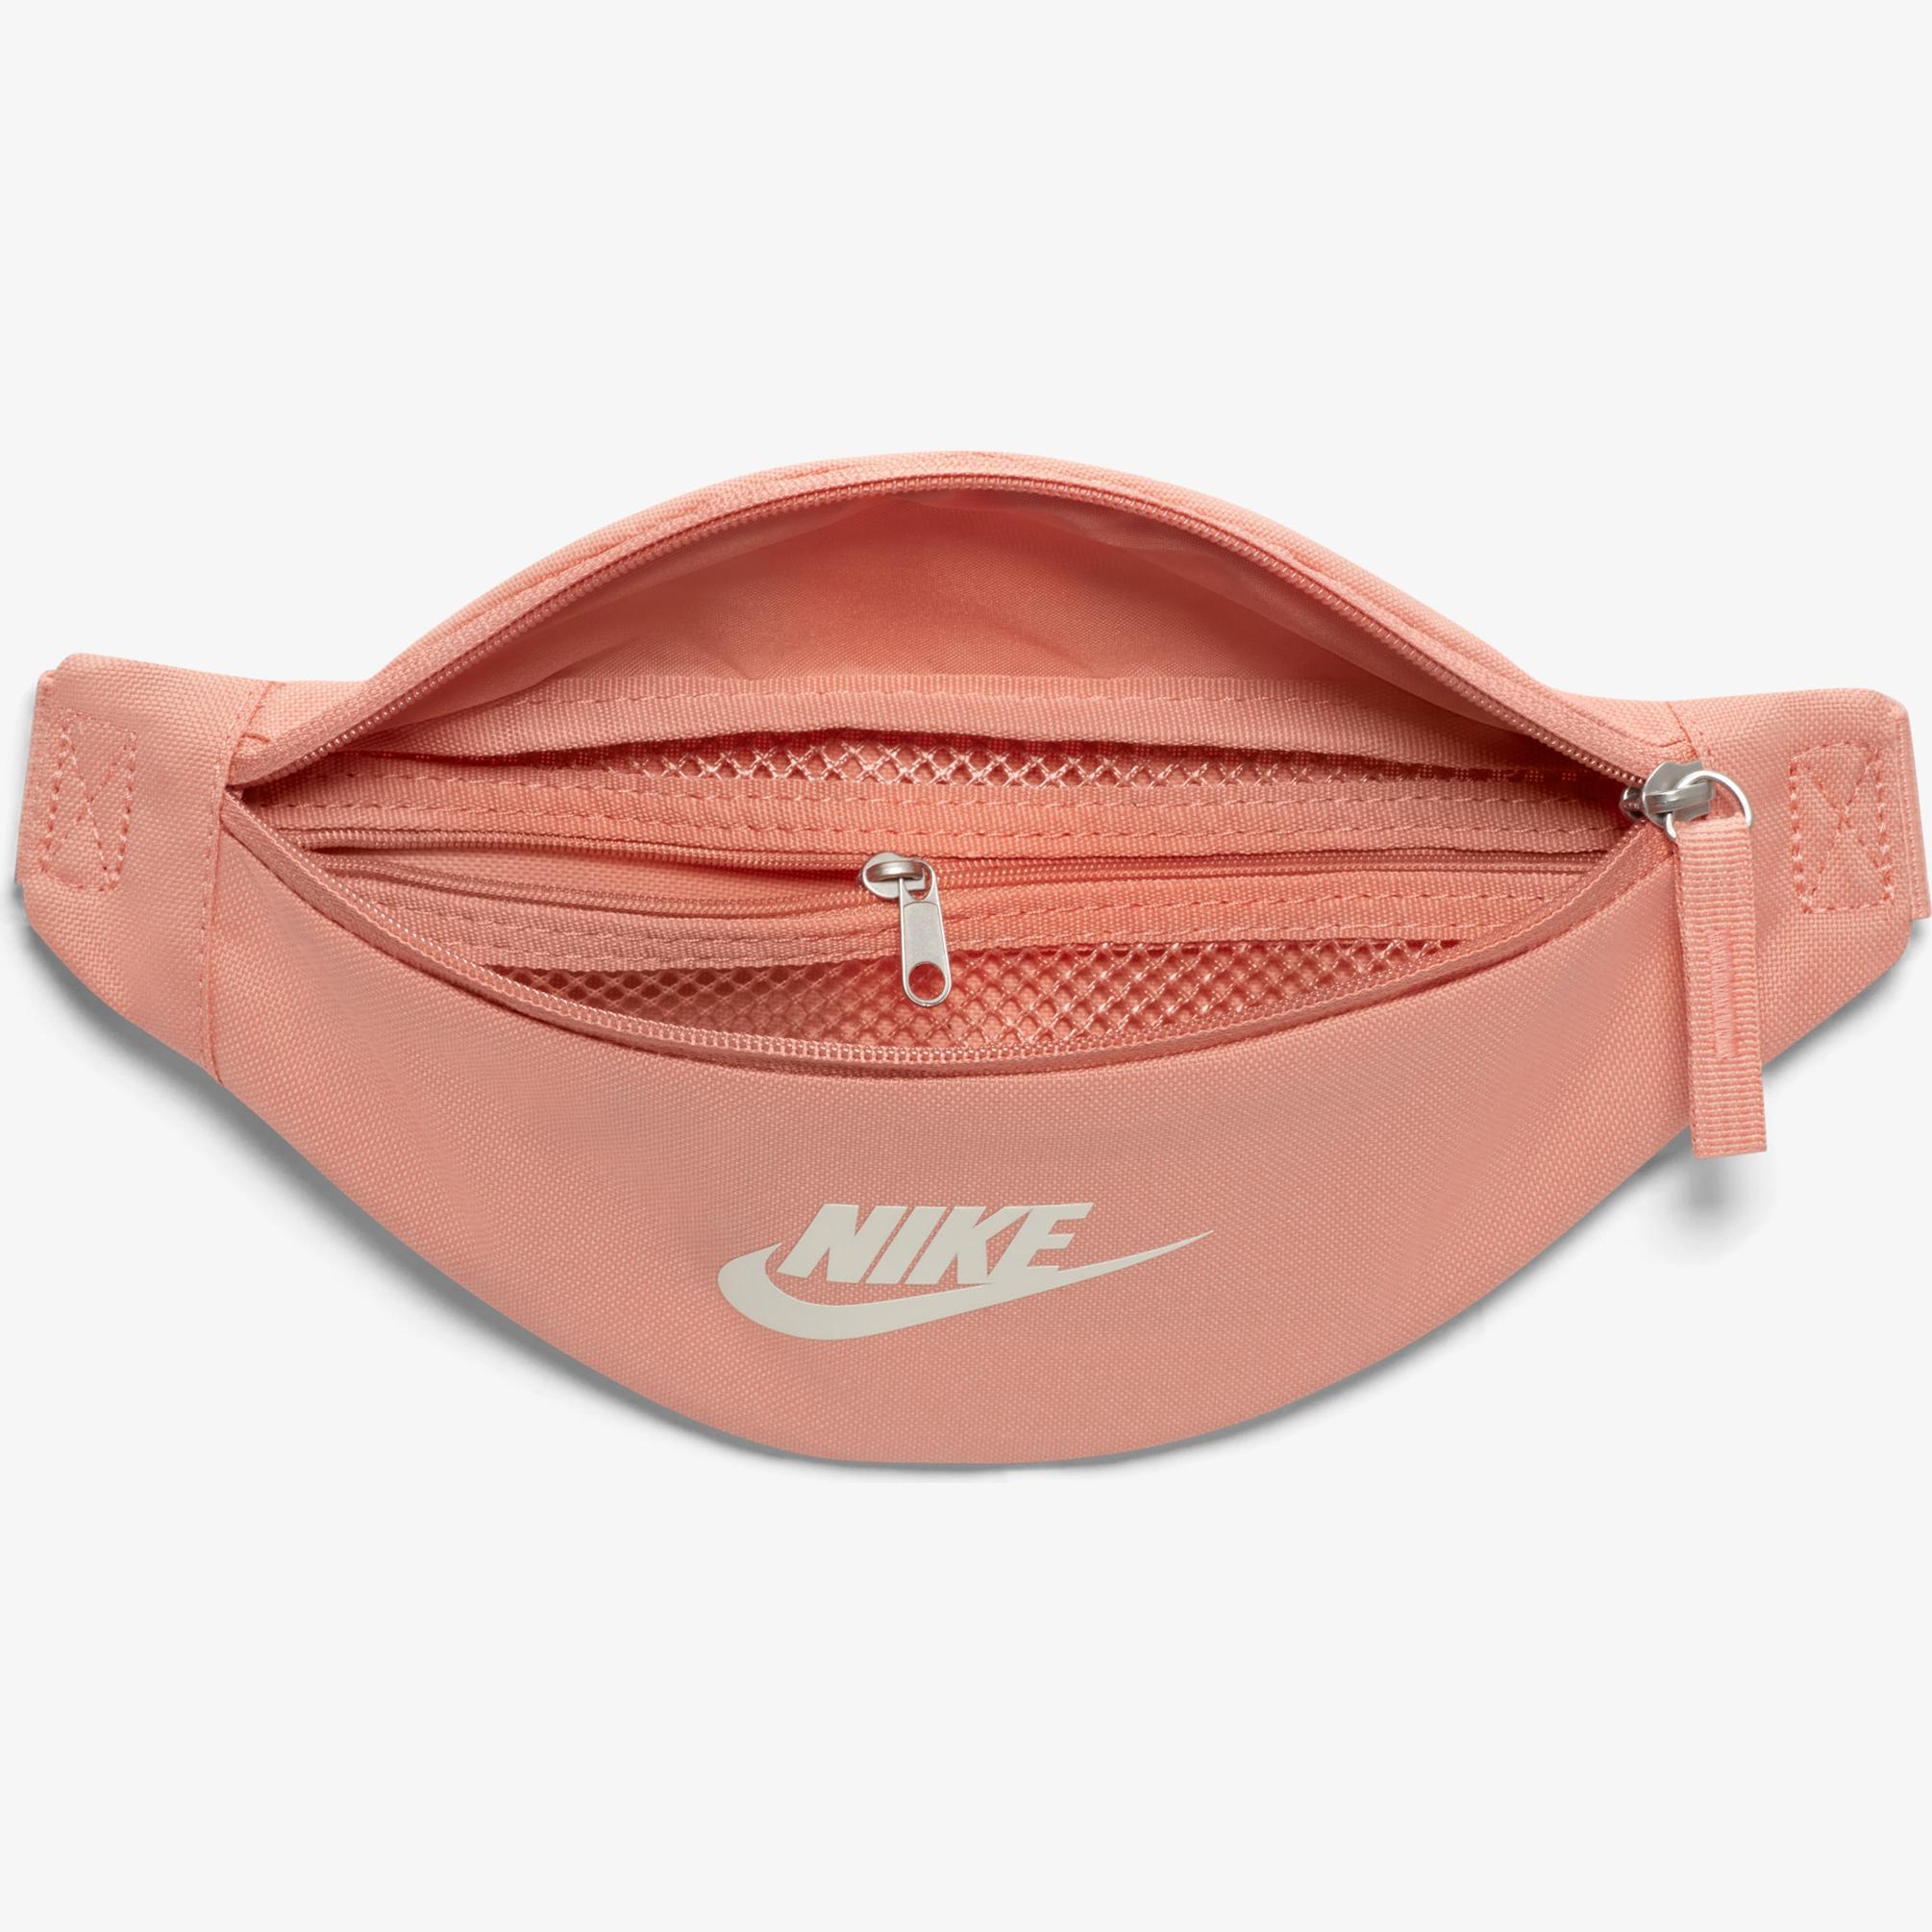  Nike Unisex Turuncu Bel Çantası